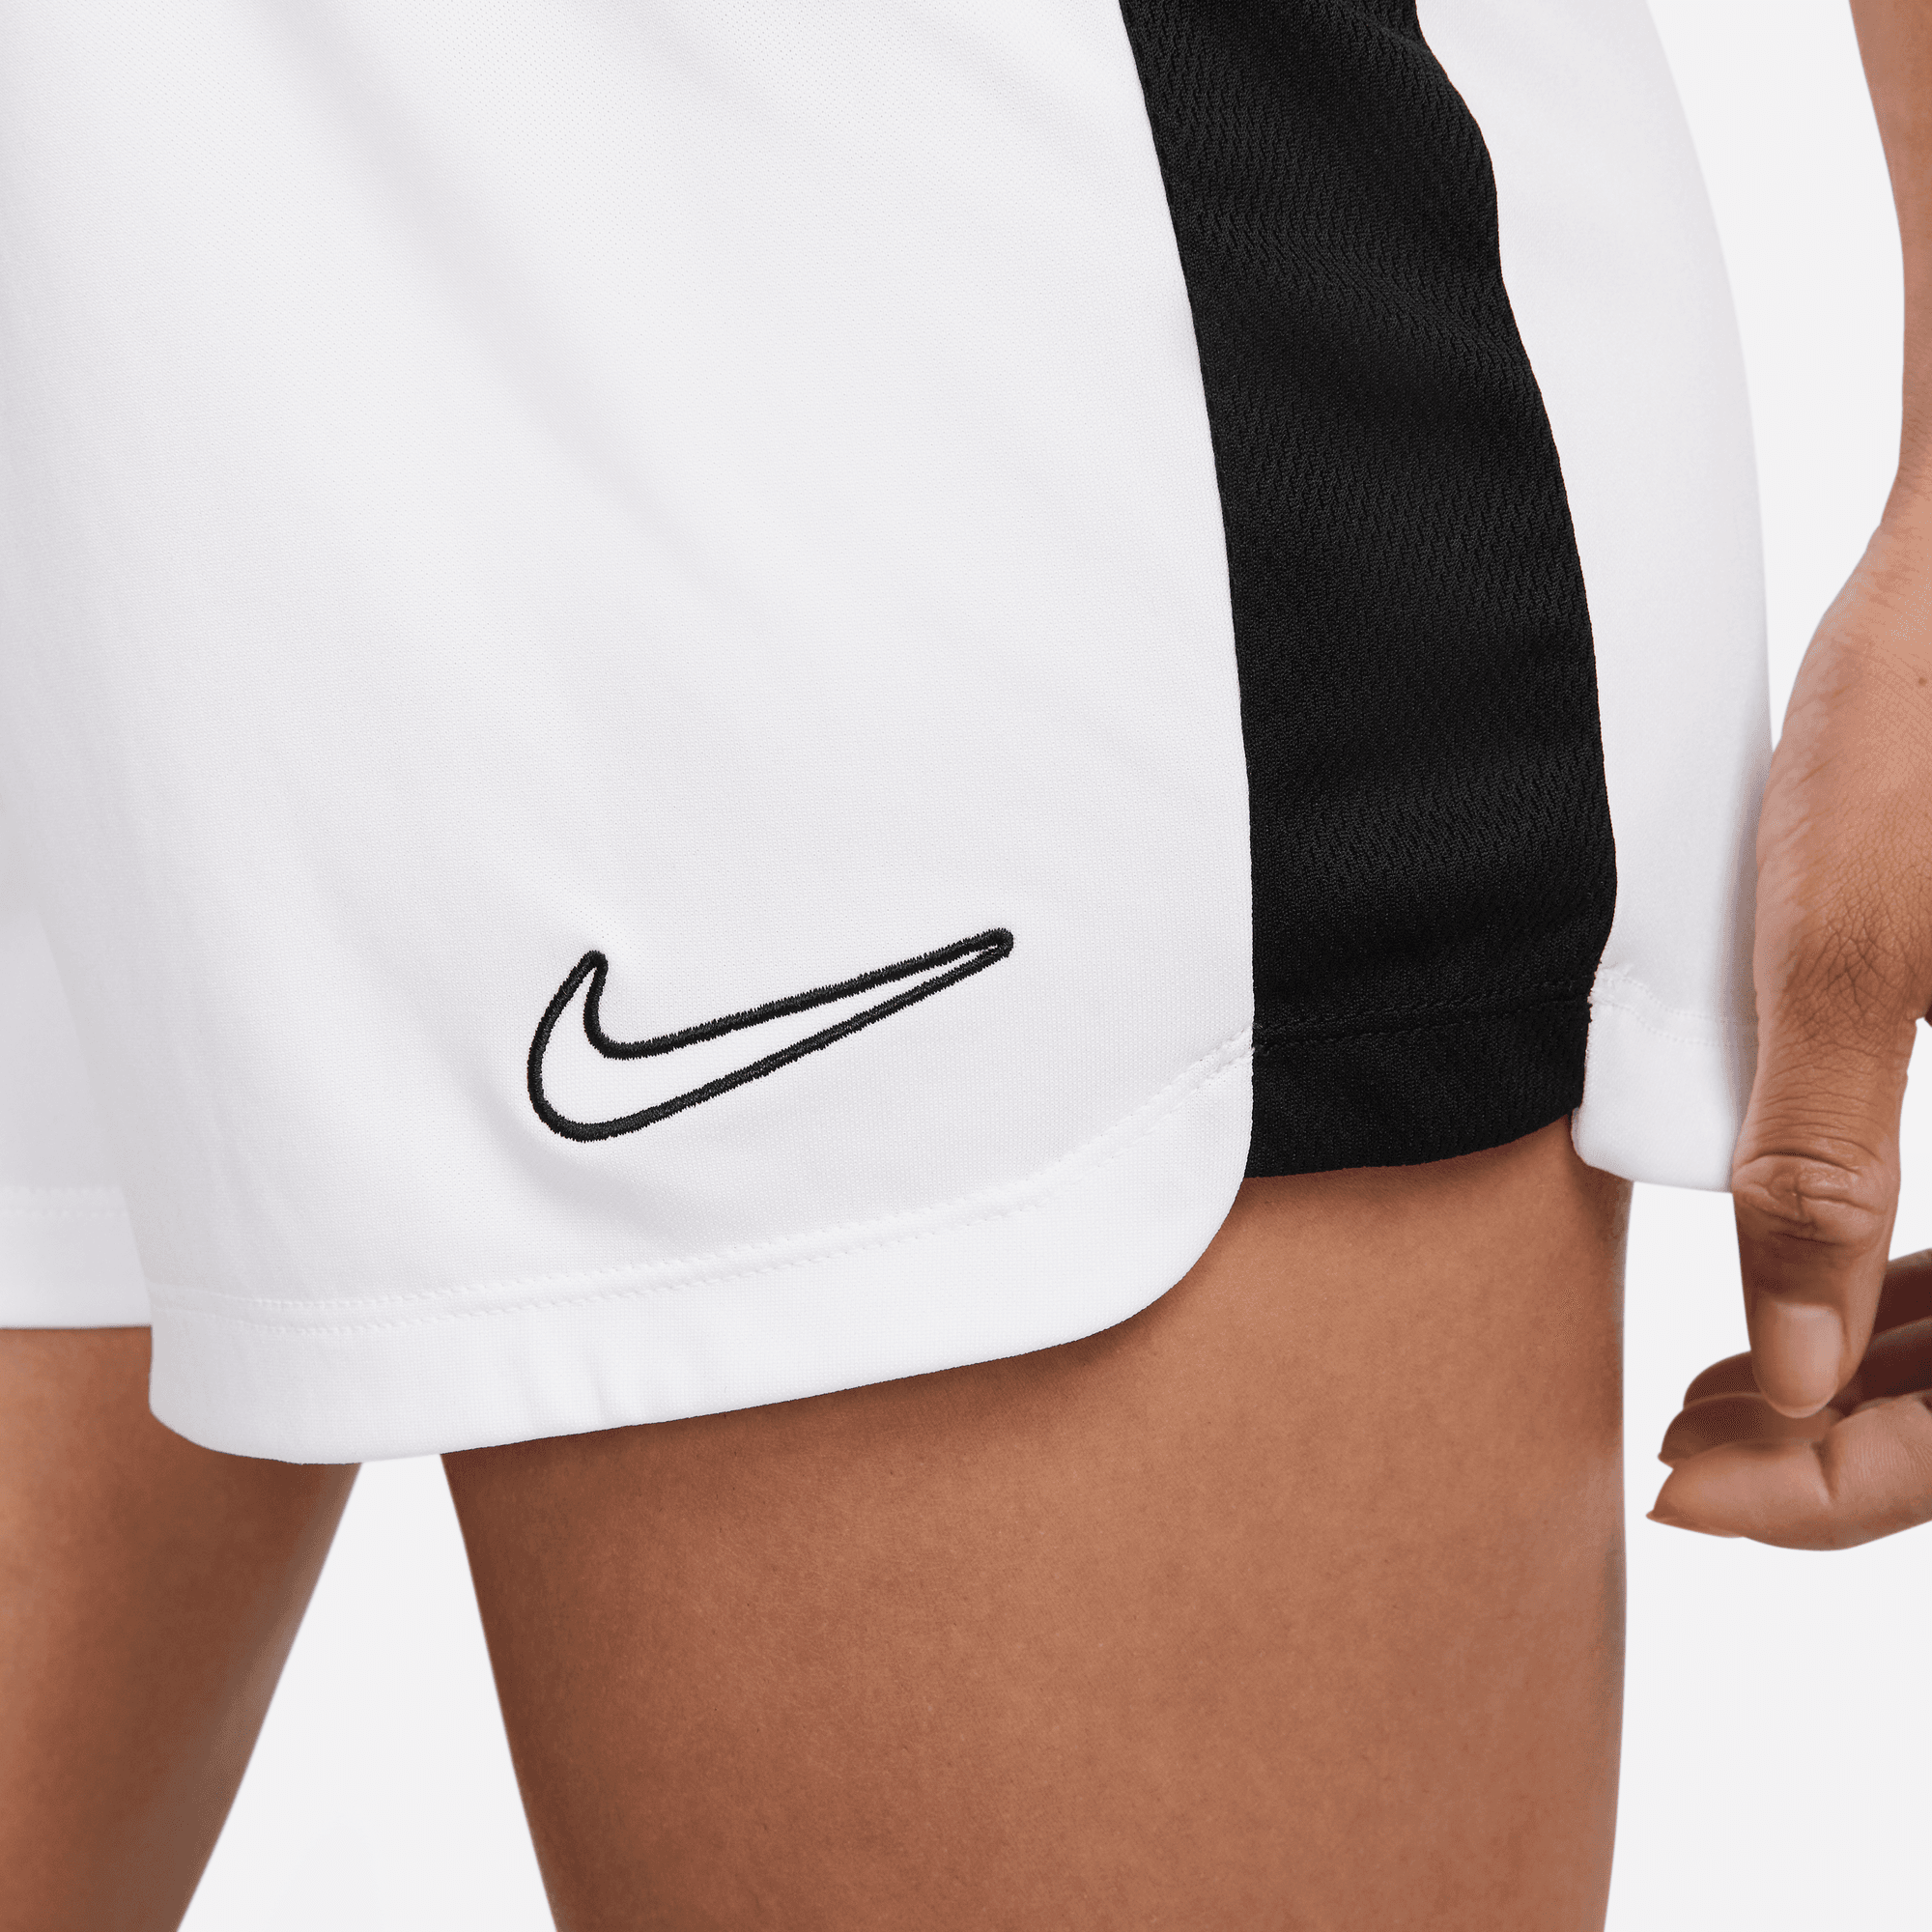 stefanssoccer.com:Nike Women\'s Academy 23 Short - White / Black